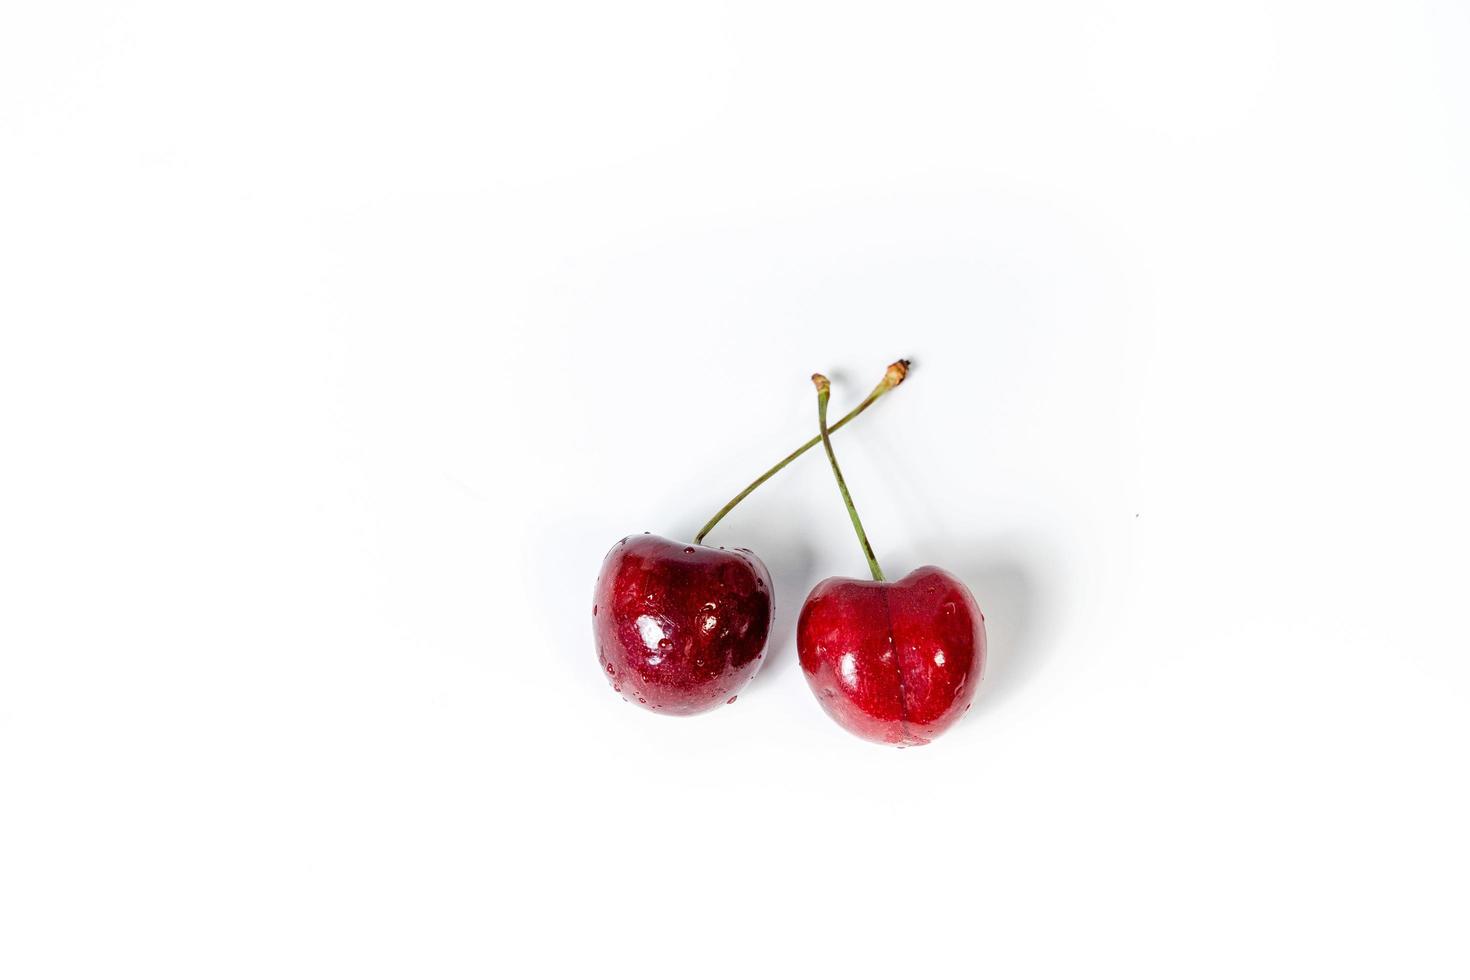 organisk mat, vegan bantning och hälsa begrepp - färsk ljuv körsbär, saftig körsbär bär frukt efterrätt som friska diet bakgrund foto